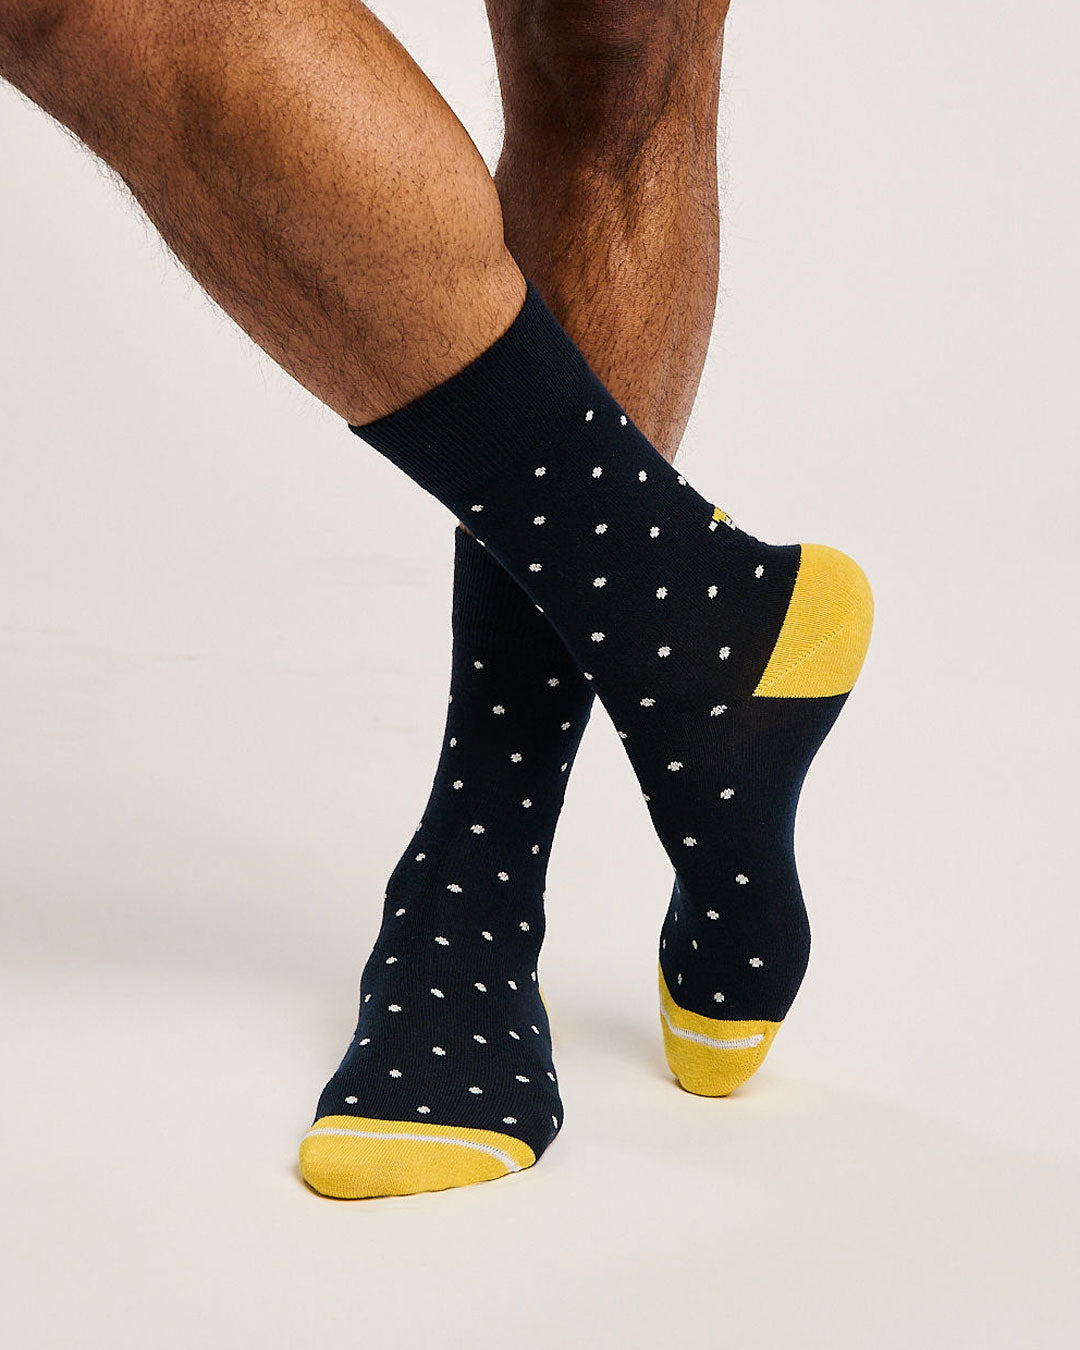 Seamless toe socks. Unisex socks. Sustainable socks